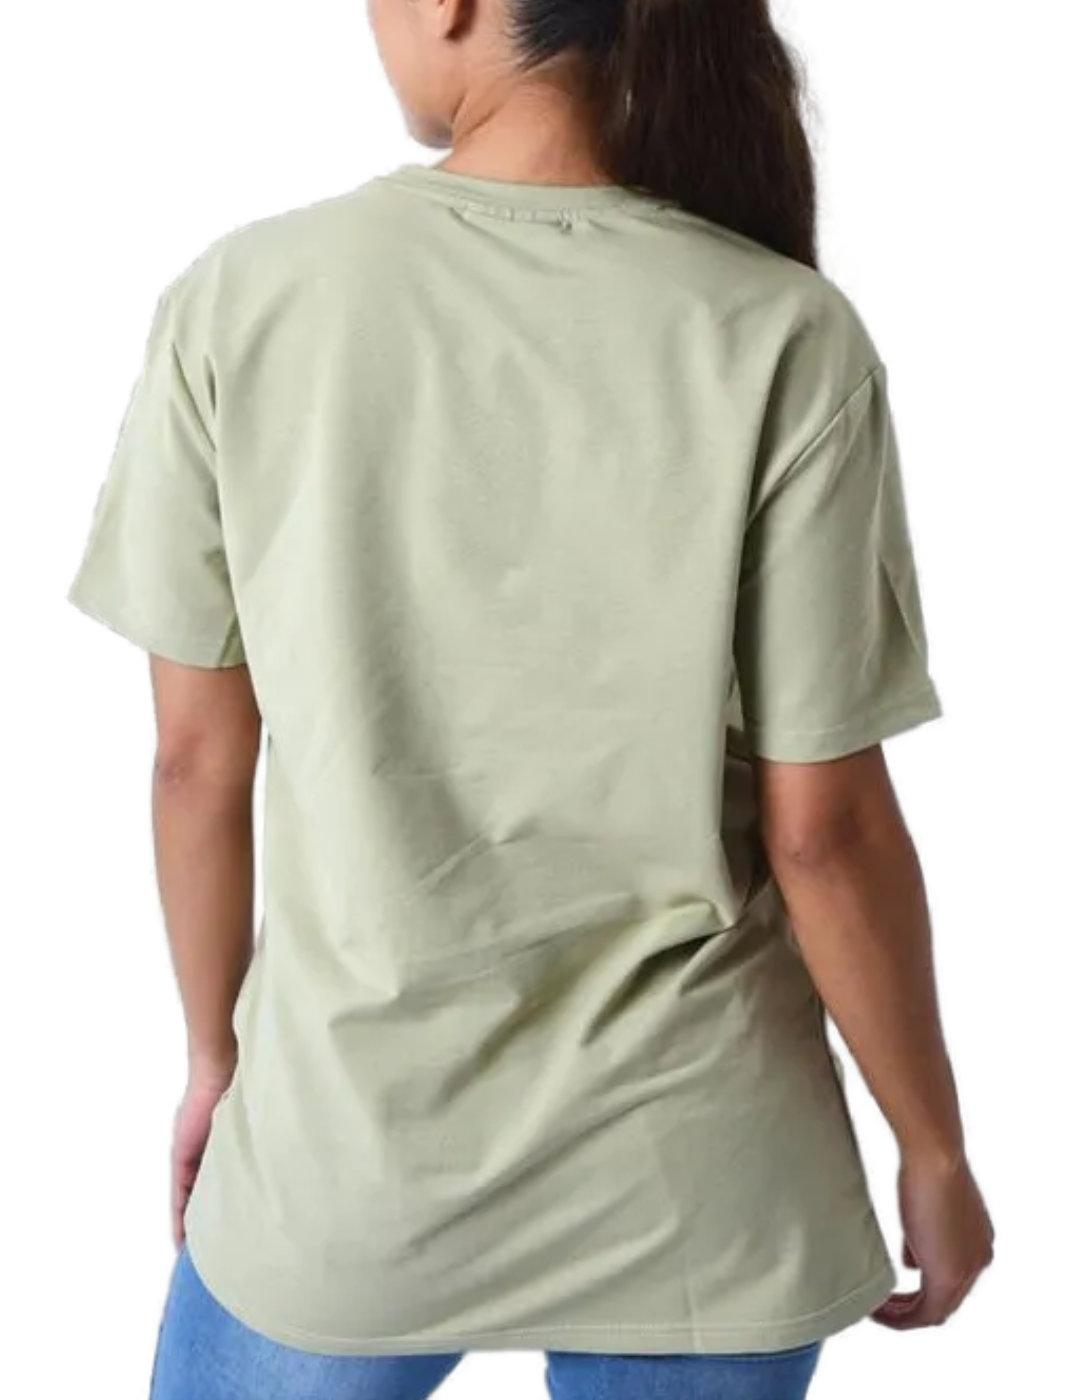 Camiseta ProjectxParis verde logo blanco manga corta unisex